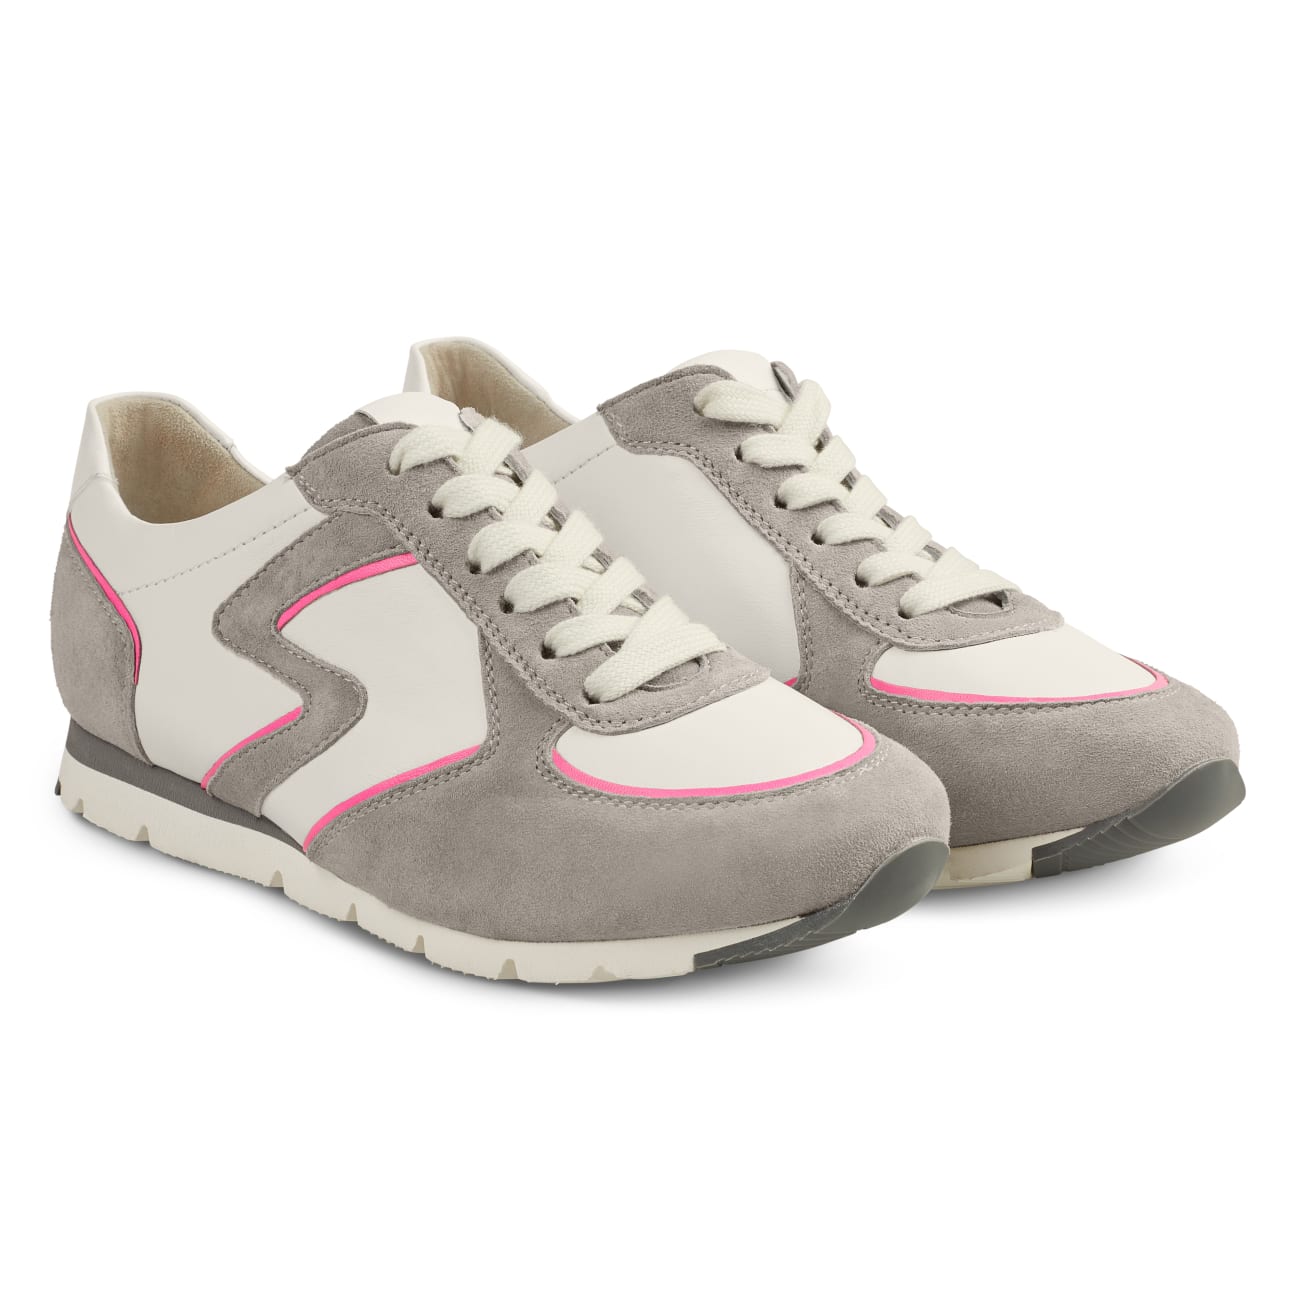 Premium Sneaker Colourline Weiß/Grau – modischer und bequemer Schuh für Hallux valgus und empfindliche Füße von LaShoe.de